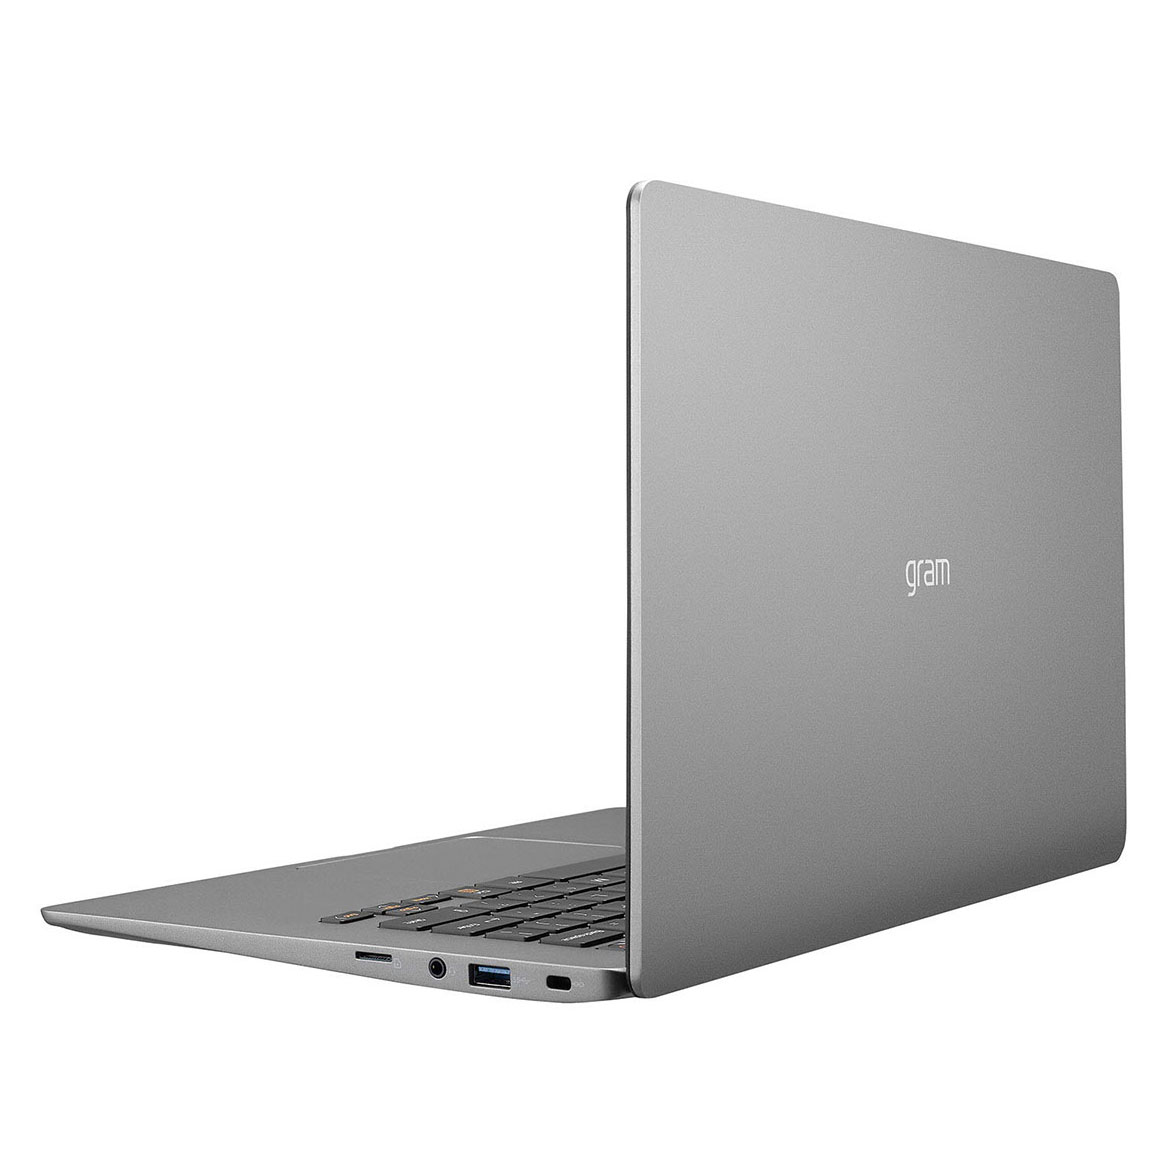 Laptop LG Gram 14Z90N (i5 1035G7/8GB RAM/256GB SSD/14.0inch FHD/FP/Win10 Home/Xám Bạc) - V.AR52A5